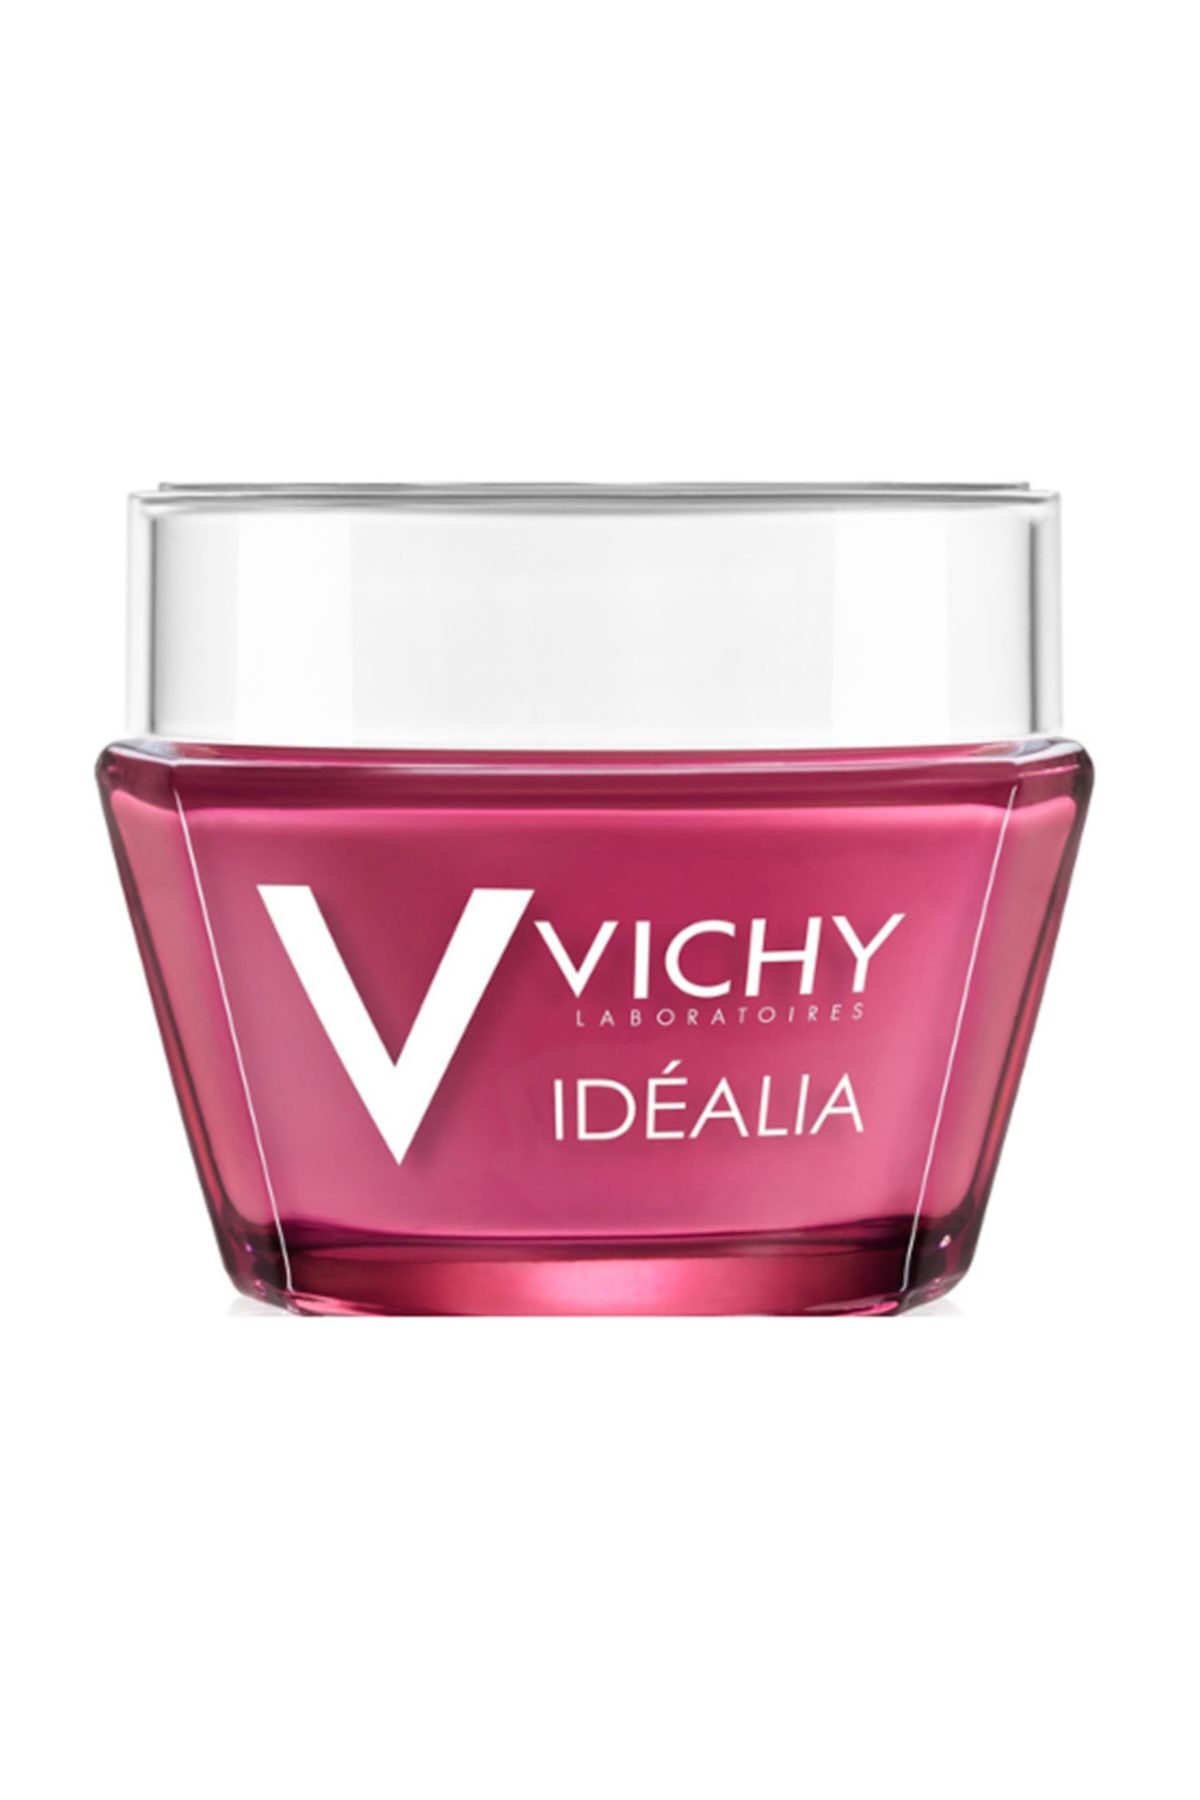 Vichy Idealia Pnm 50 Ml